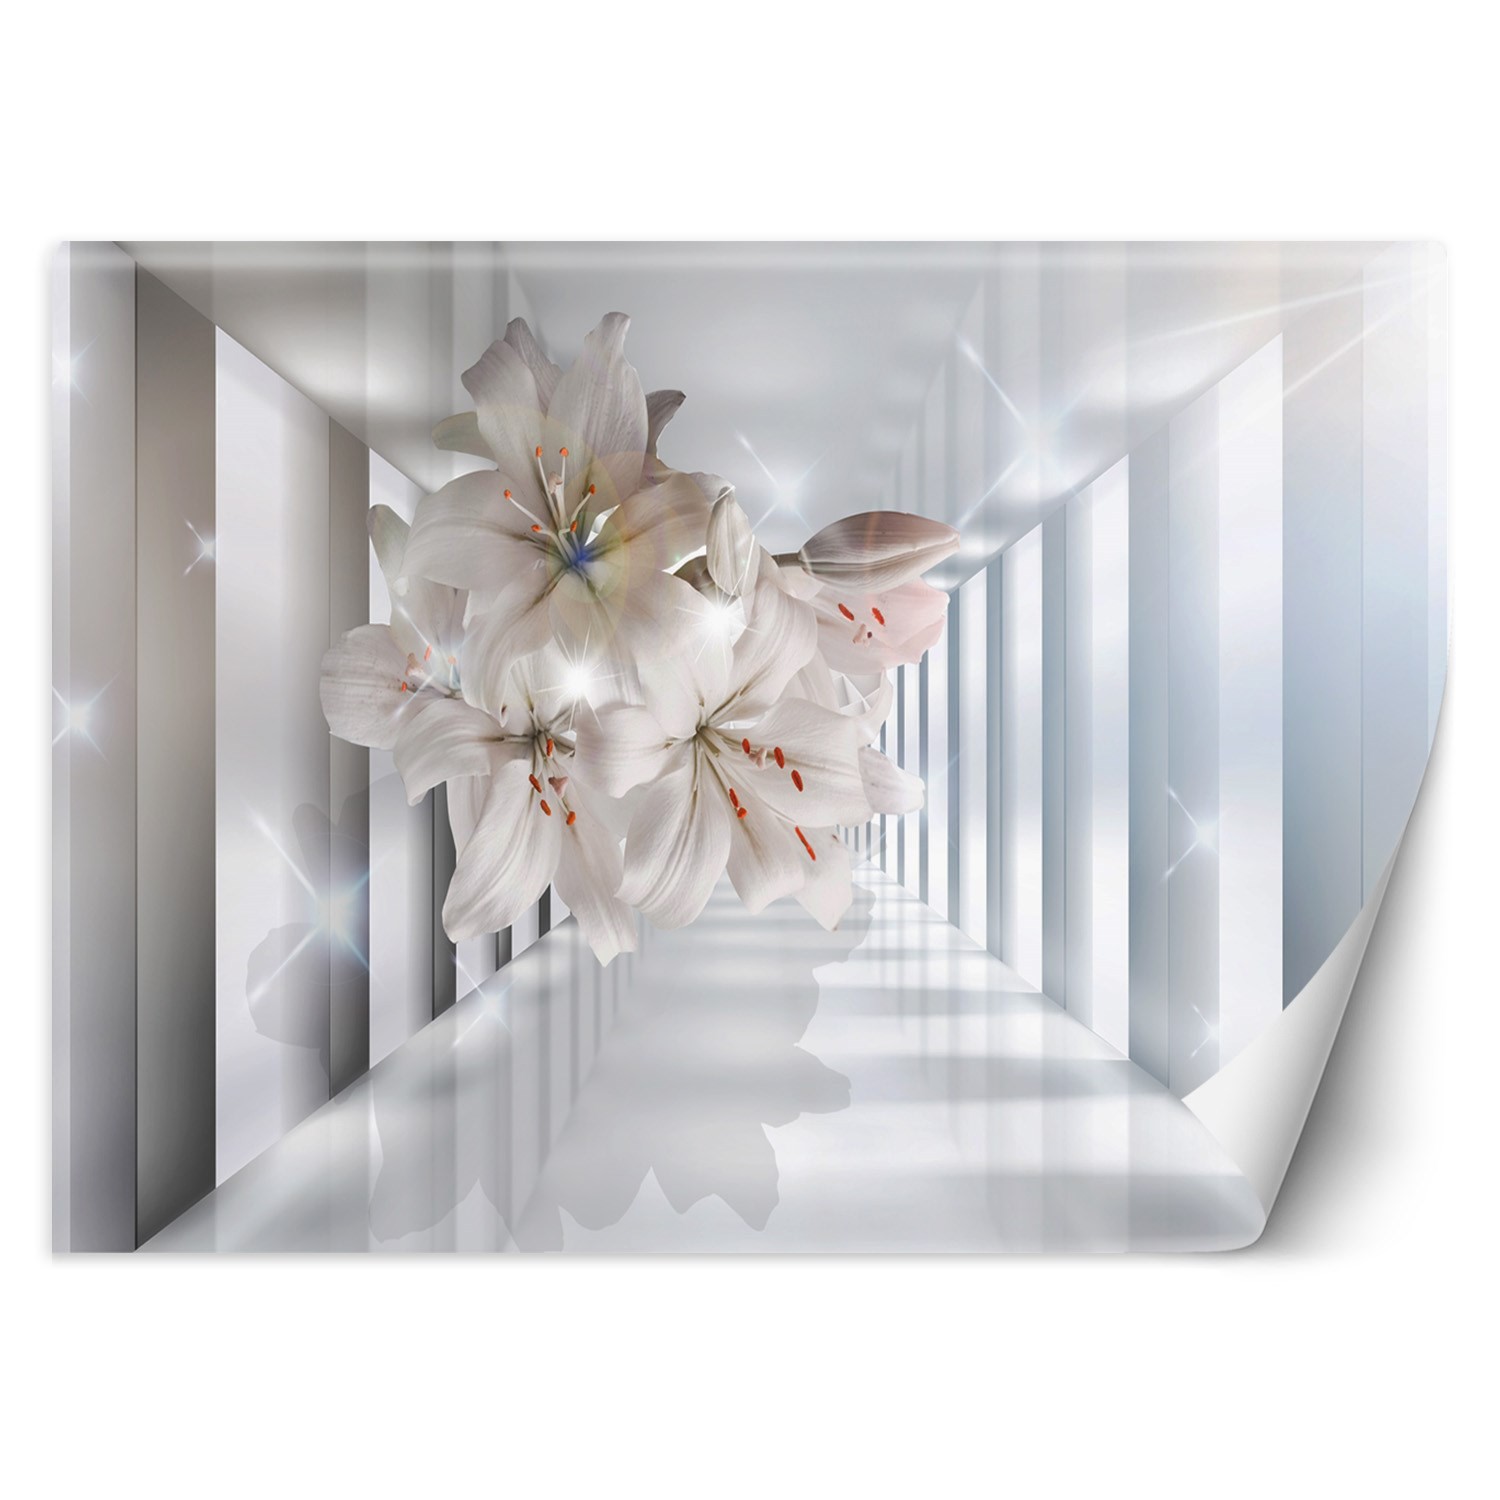 Trend24 – Behang – Bloemen In De Corridor 3D – Behangpapier – Fotobehang 3D – Behang Woonkamer – 450x315x2 cm – Incl. behanglijm